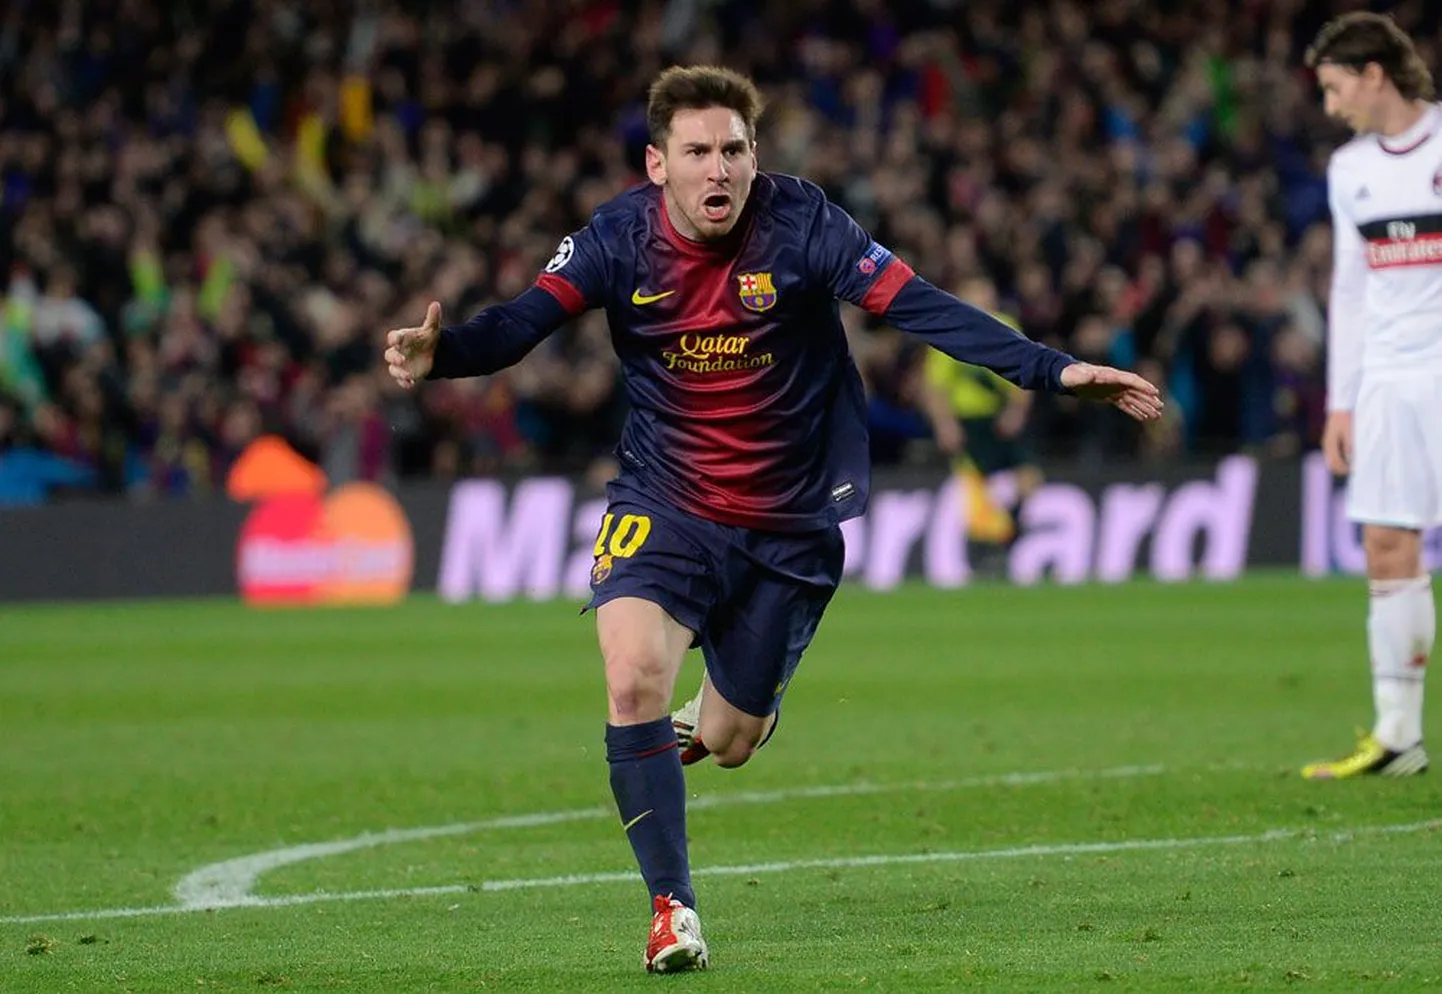 Kas maailma parim jalgpallur Lionel Messi lõi ka hooaja kõige ilusama värava?